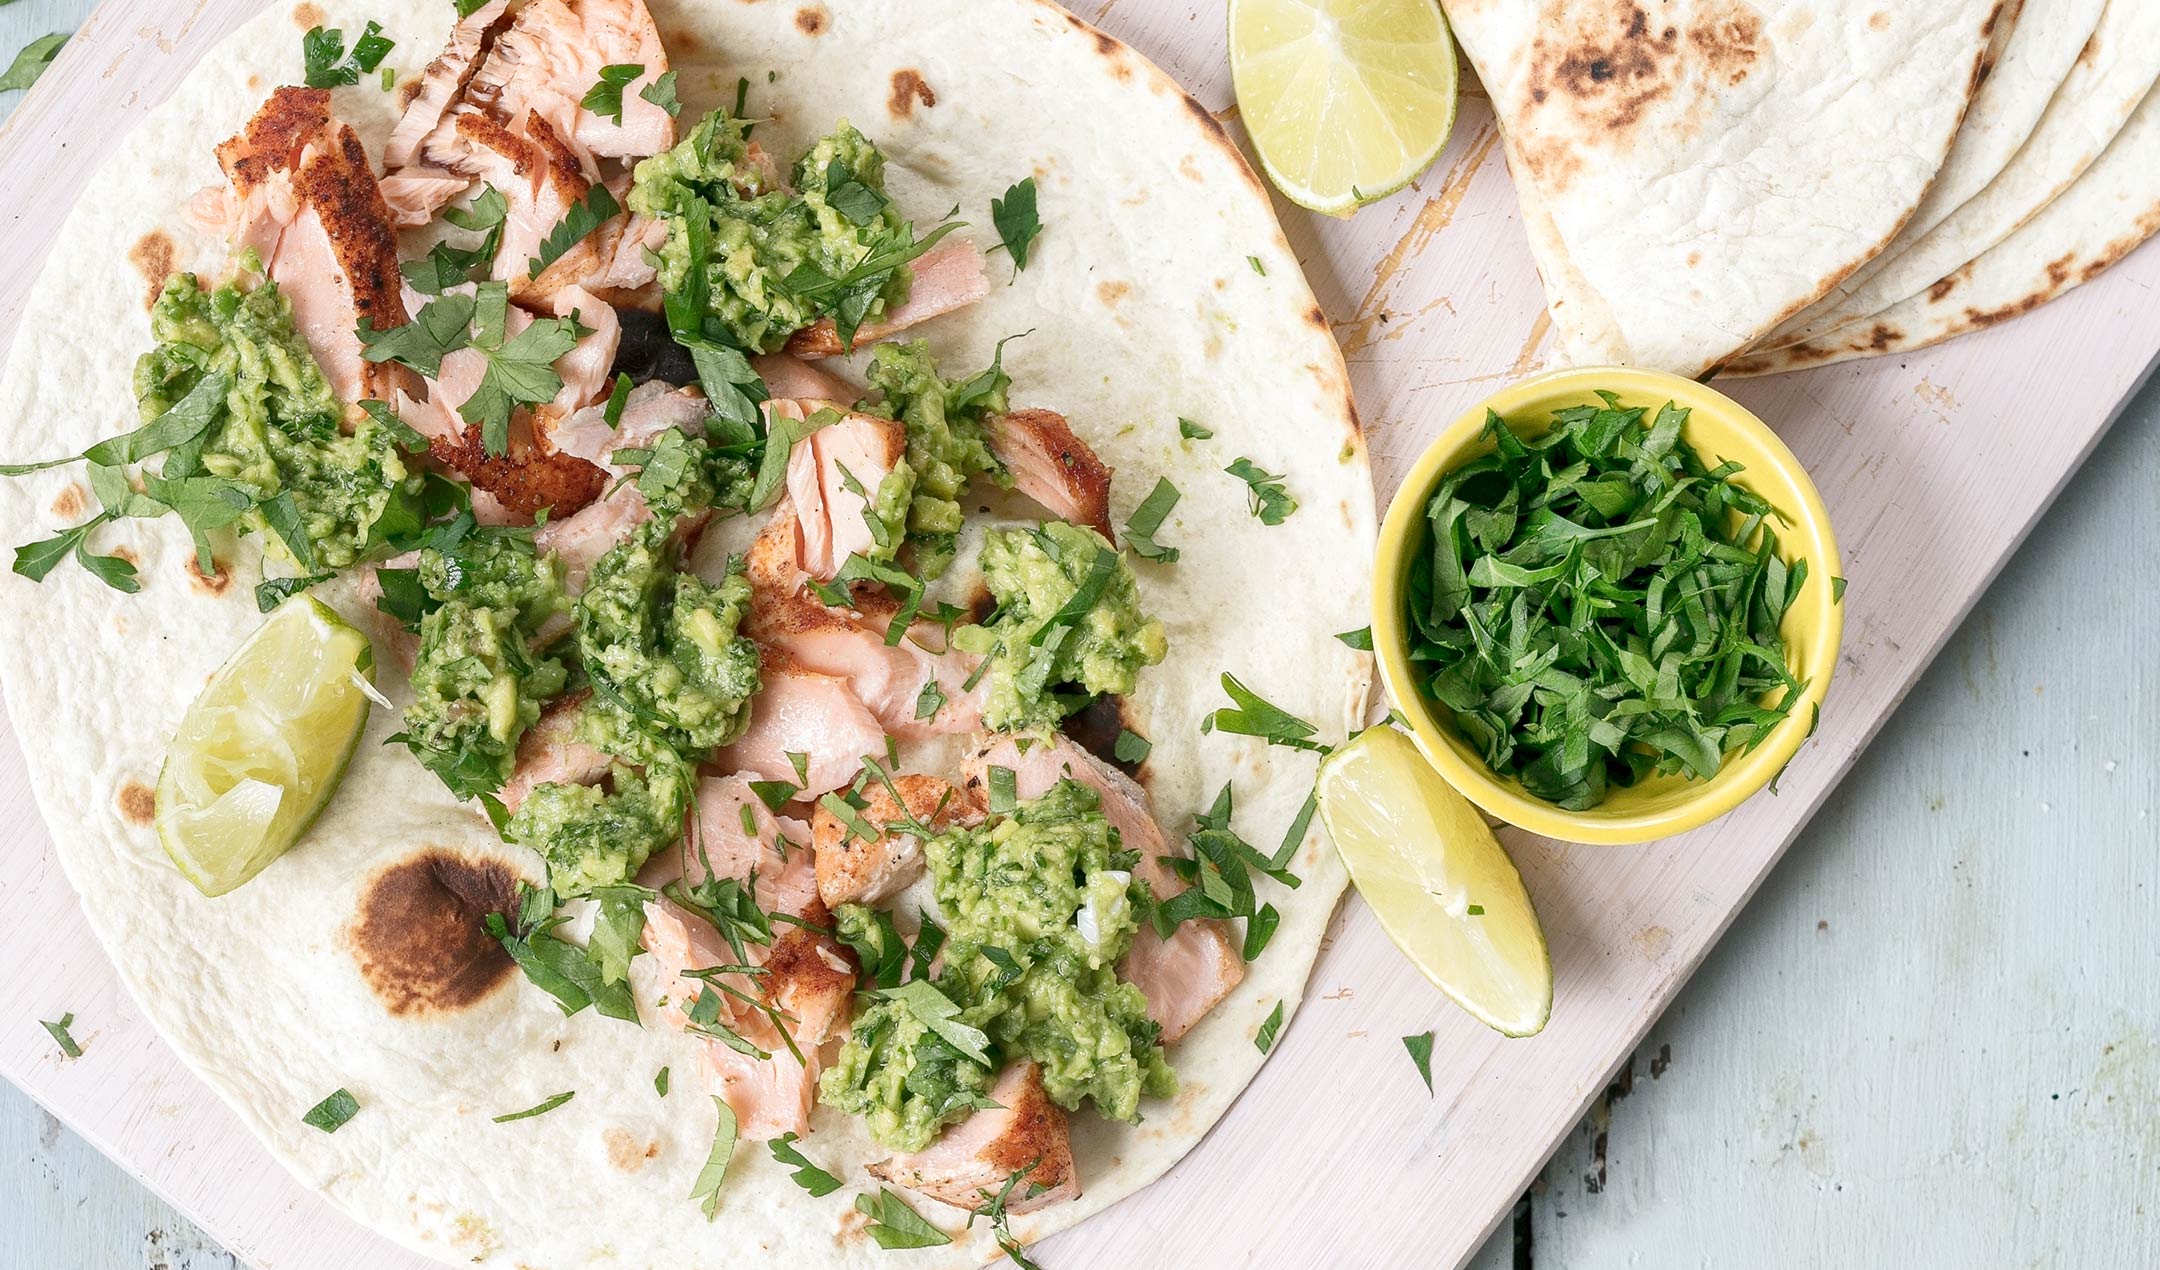 Easy salmon tacos with avocado gremolata